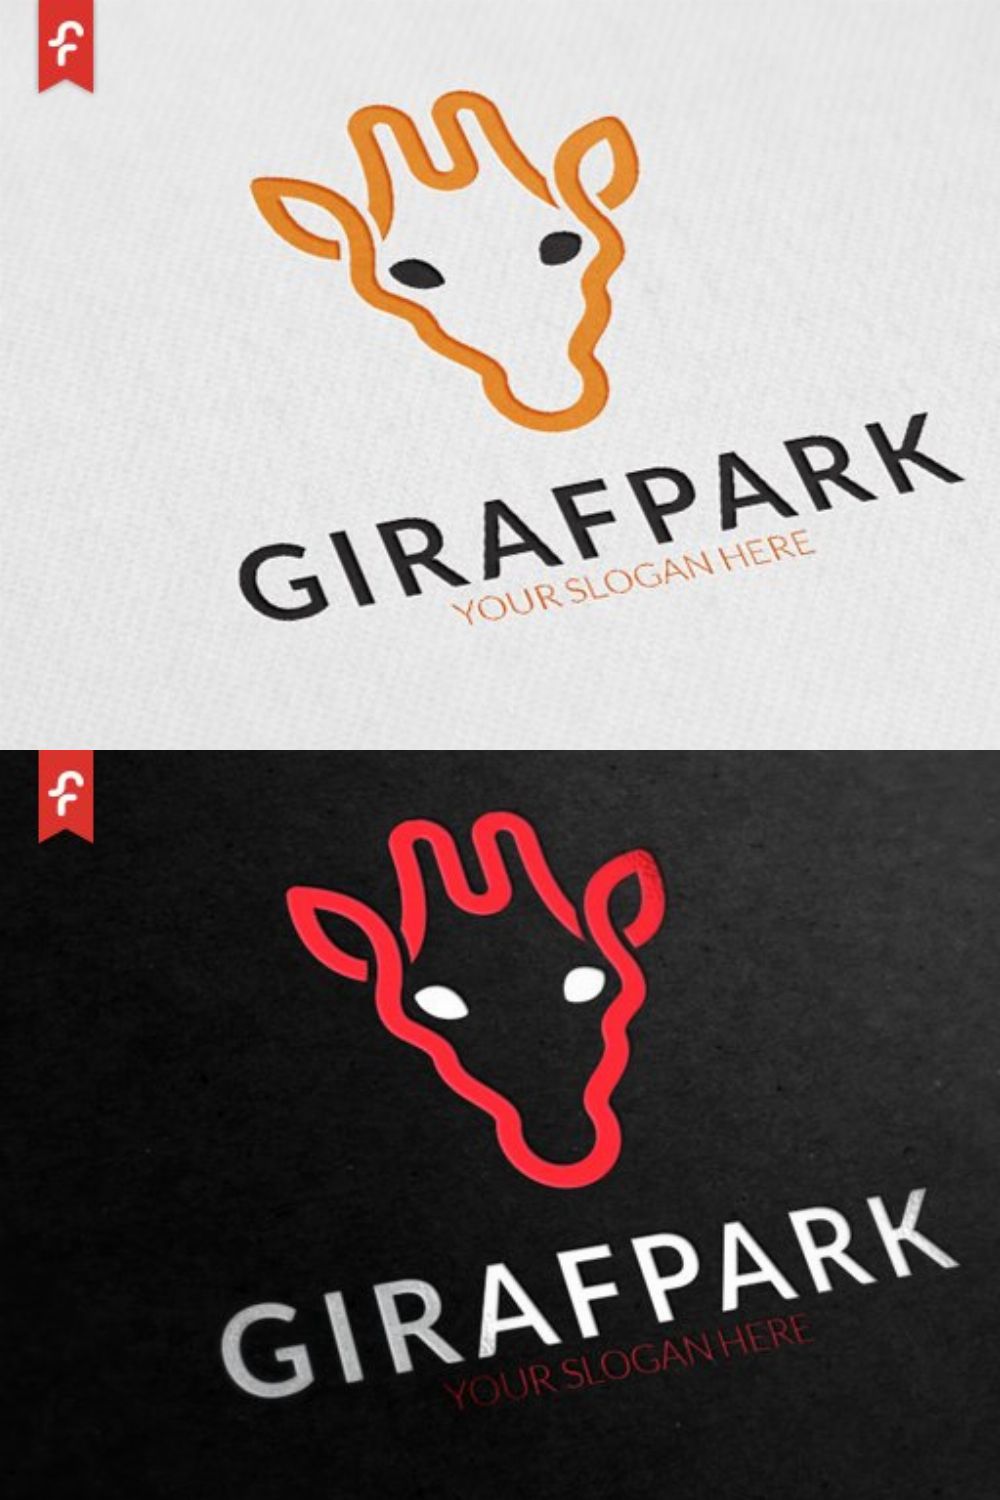 Giraffe Park Logo pinterest preview image.